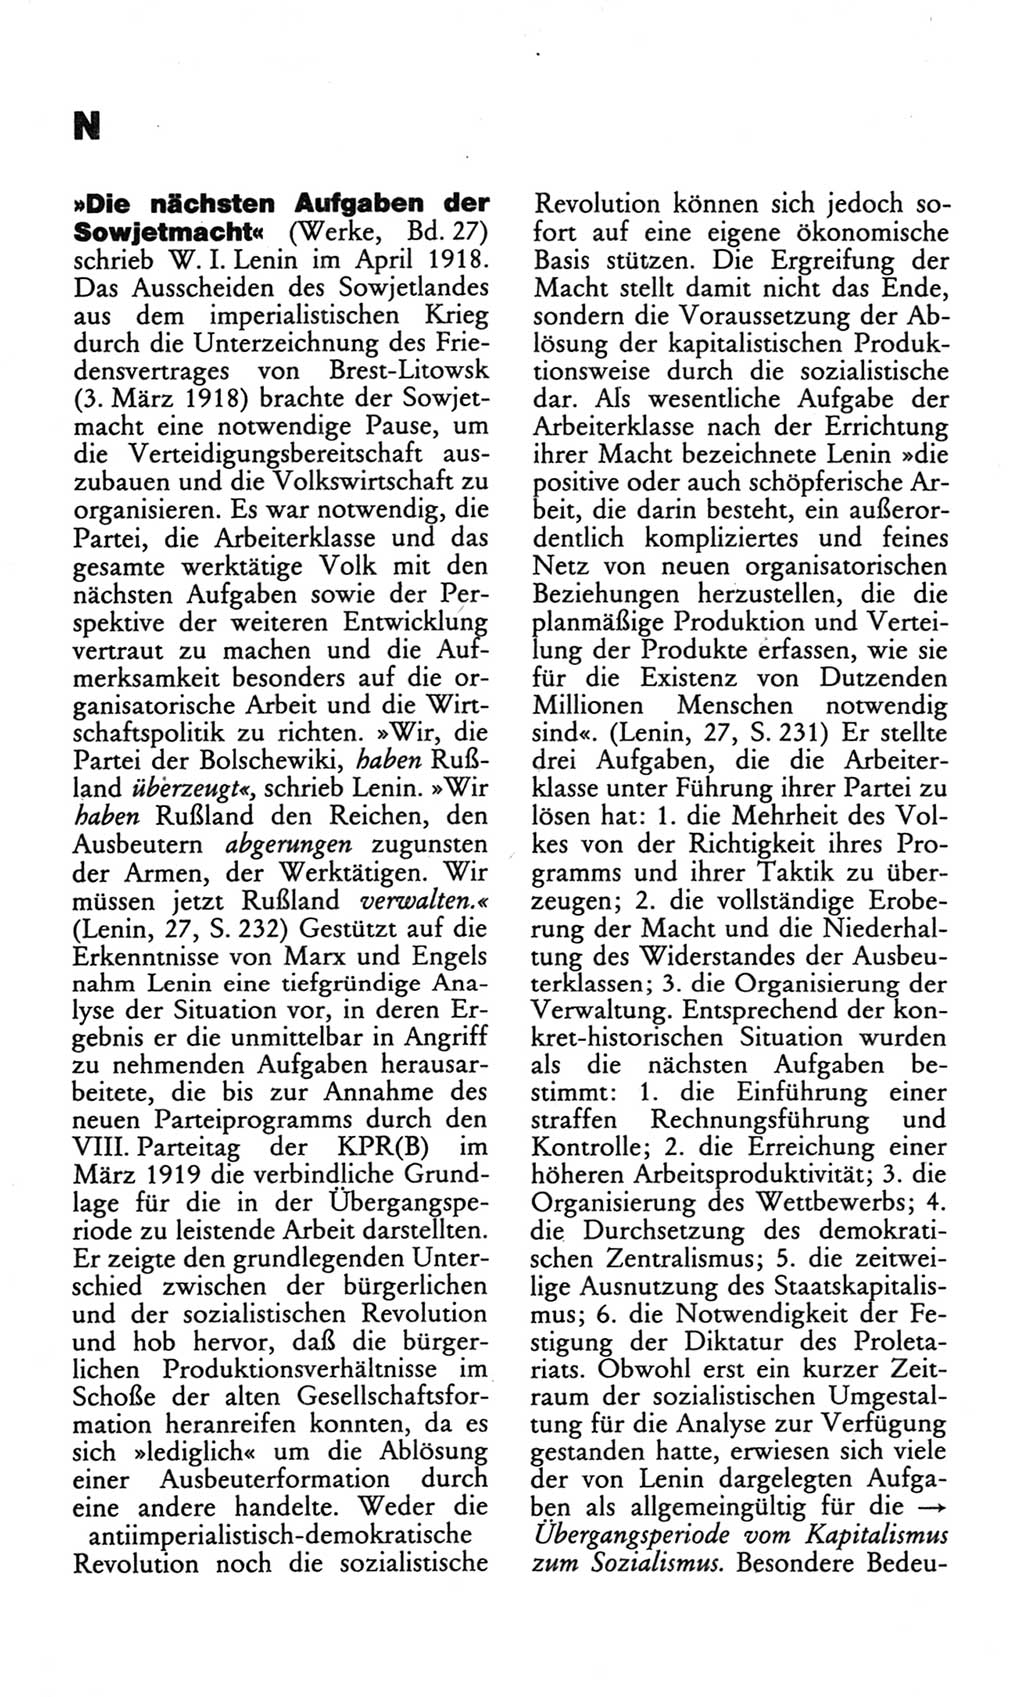 Wörterbuch des wissenschaftlichen Kommunismus [Deutsche Demokratische Republik (DDR)] 1982, Seite 262 (Wb. wiss. Komm. DDR 1982, S. 262)